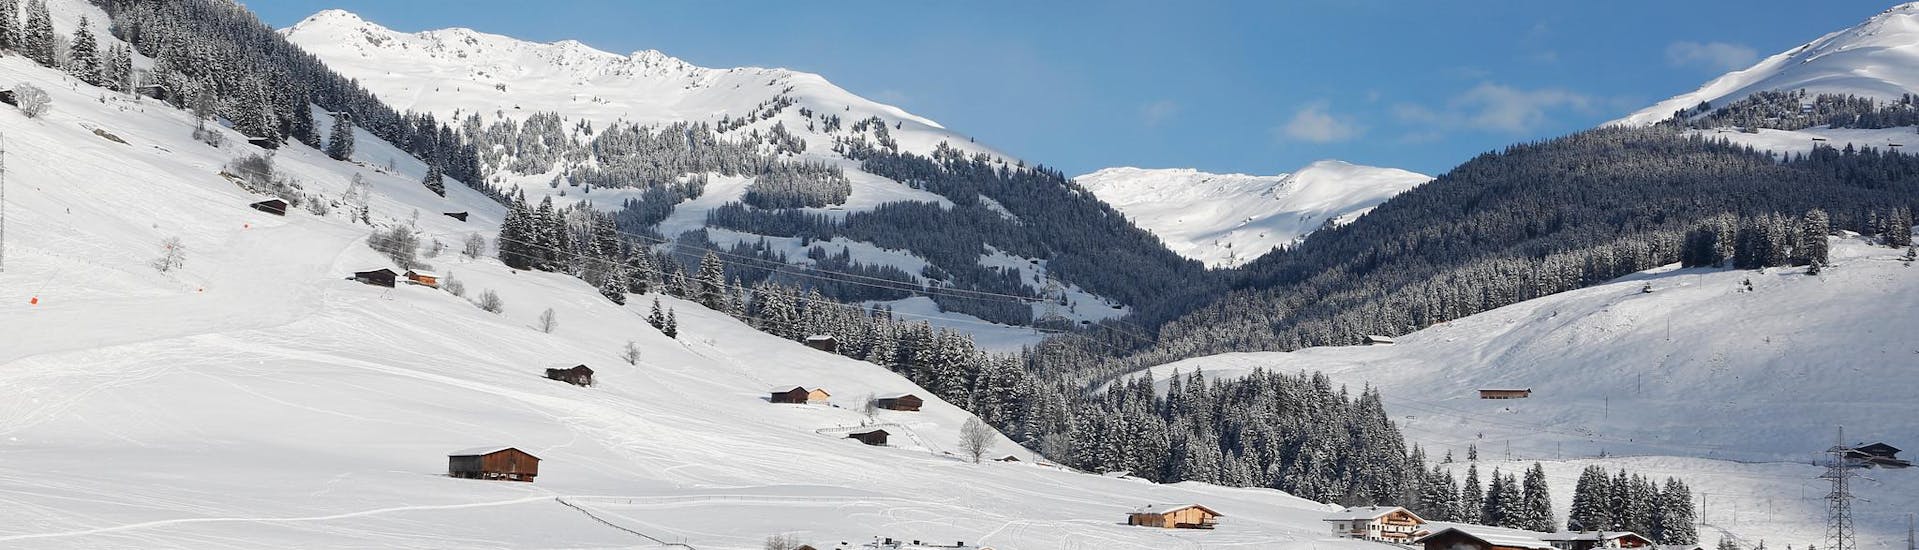 Ausblick auf die sonnige Berglandschaft beim Skifahren lernen mit den Skischulen in Gerlos.